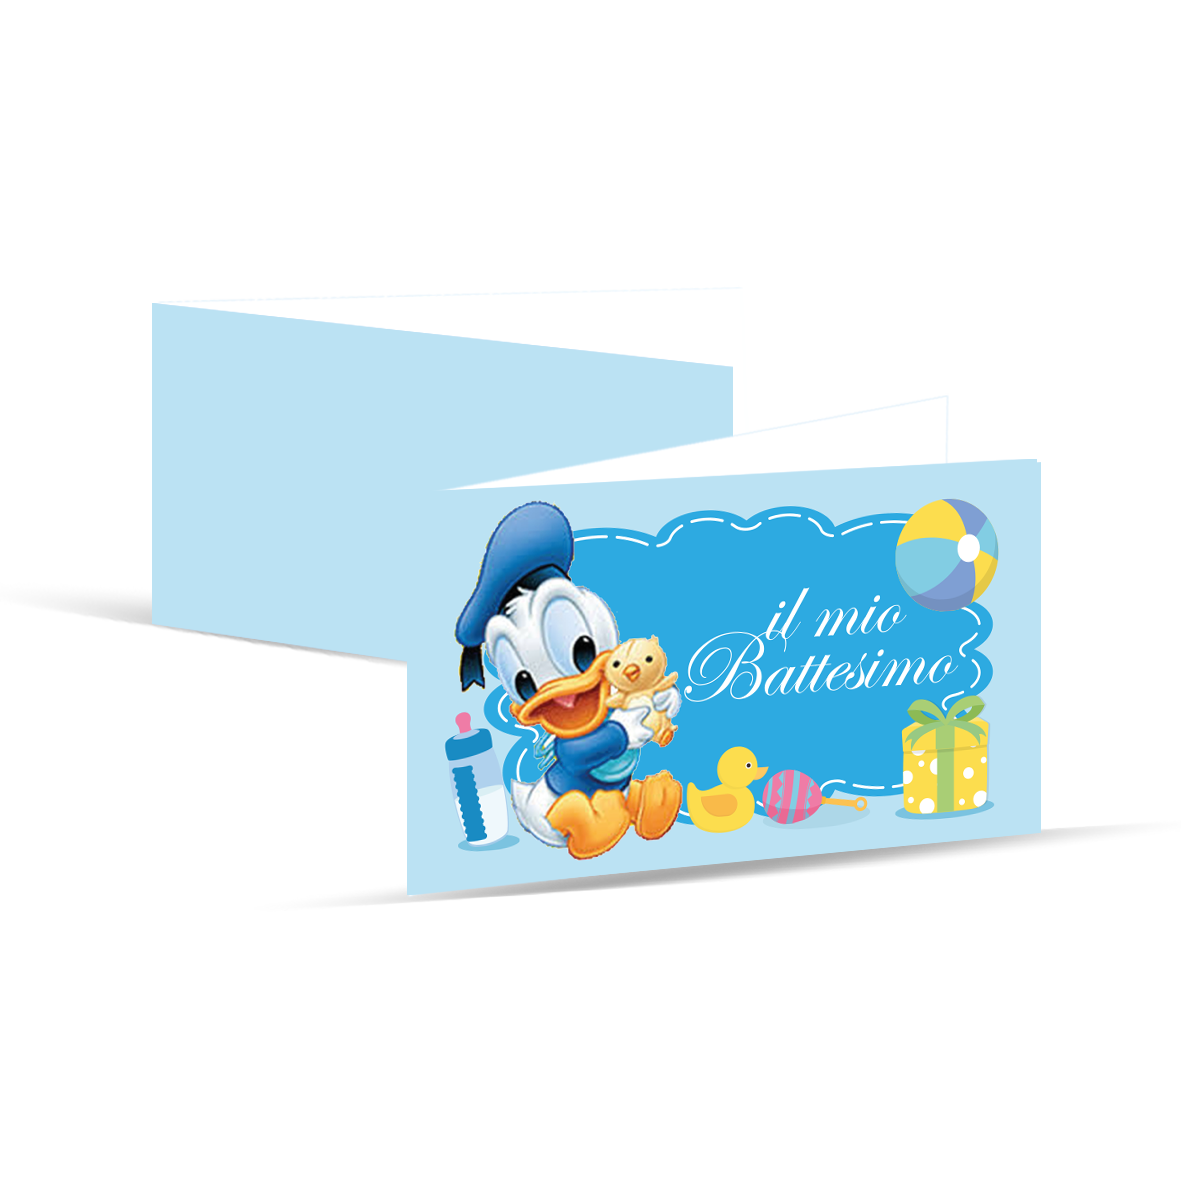 Paperino Walt Disney Il Bigliettino Per I Confetti Lagigroup Tipografia E Stampa Digitale Online